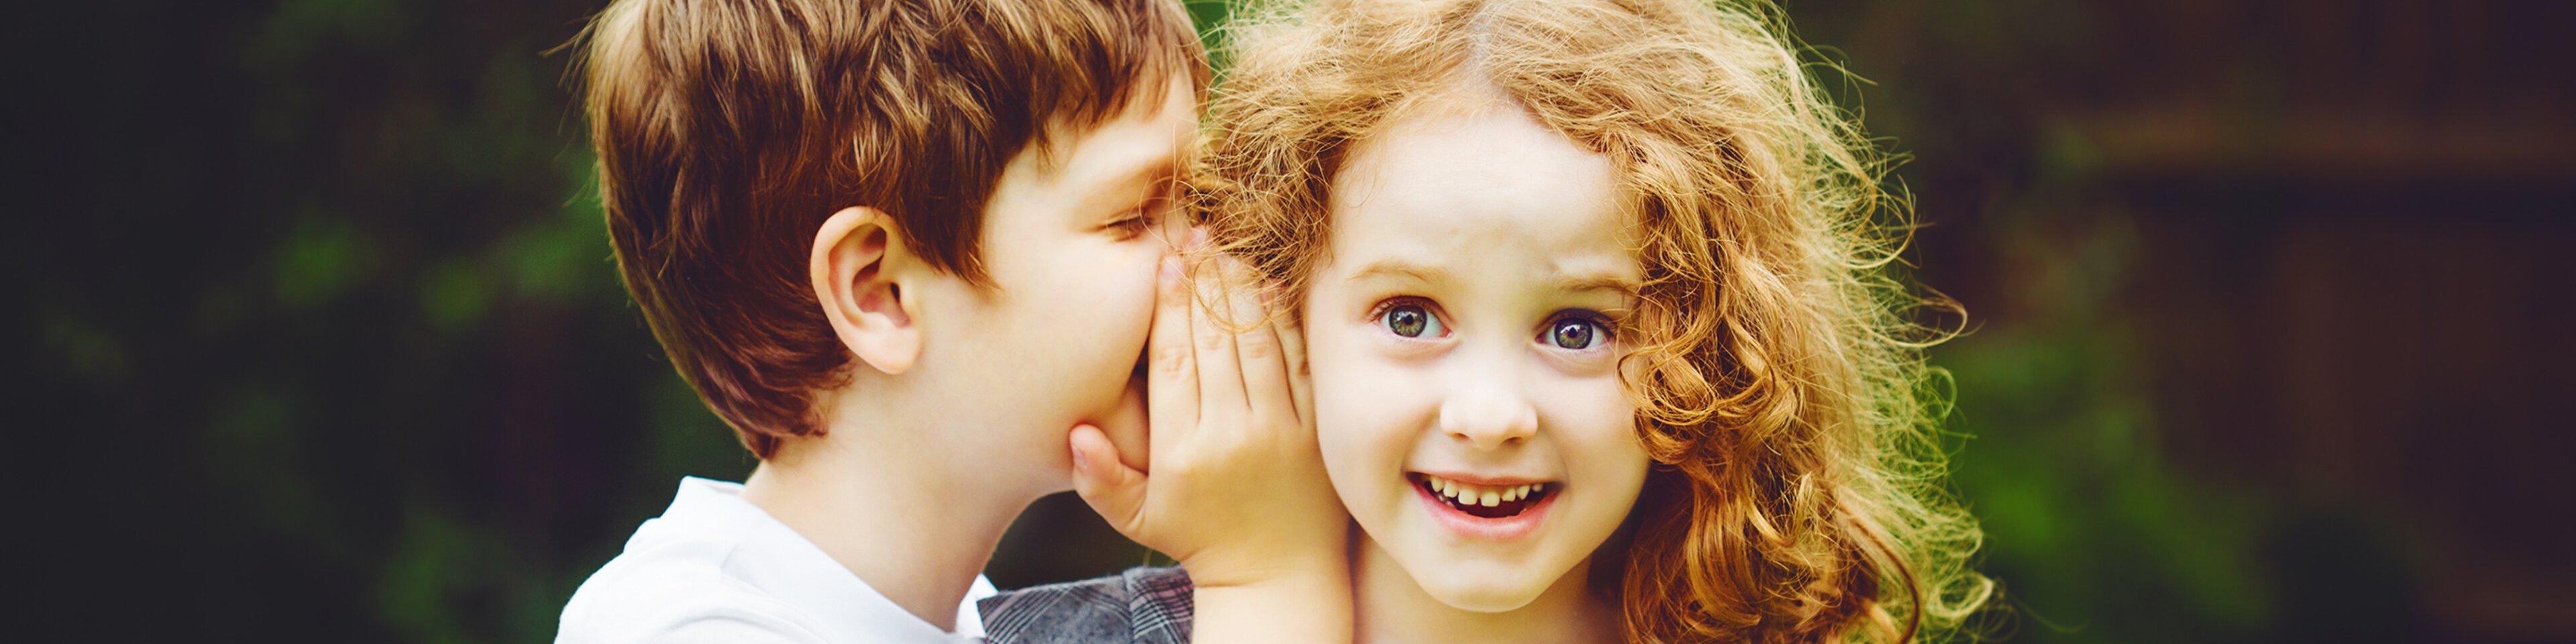 Kinder flüstern sich ins Ohr | © Shutterstock